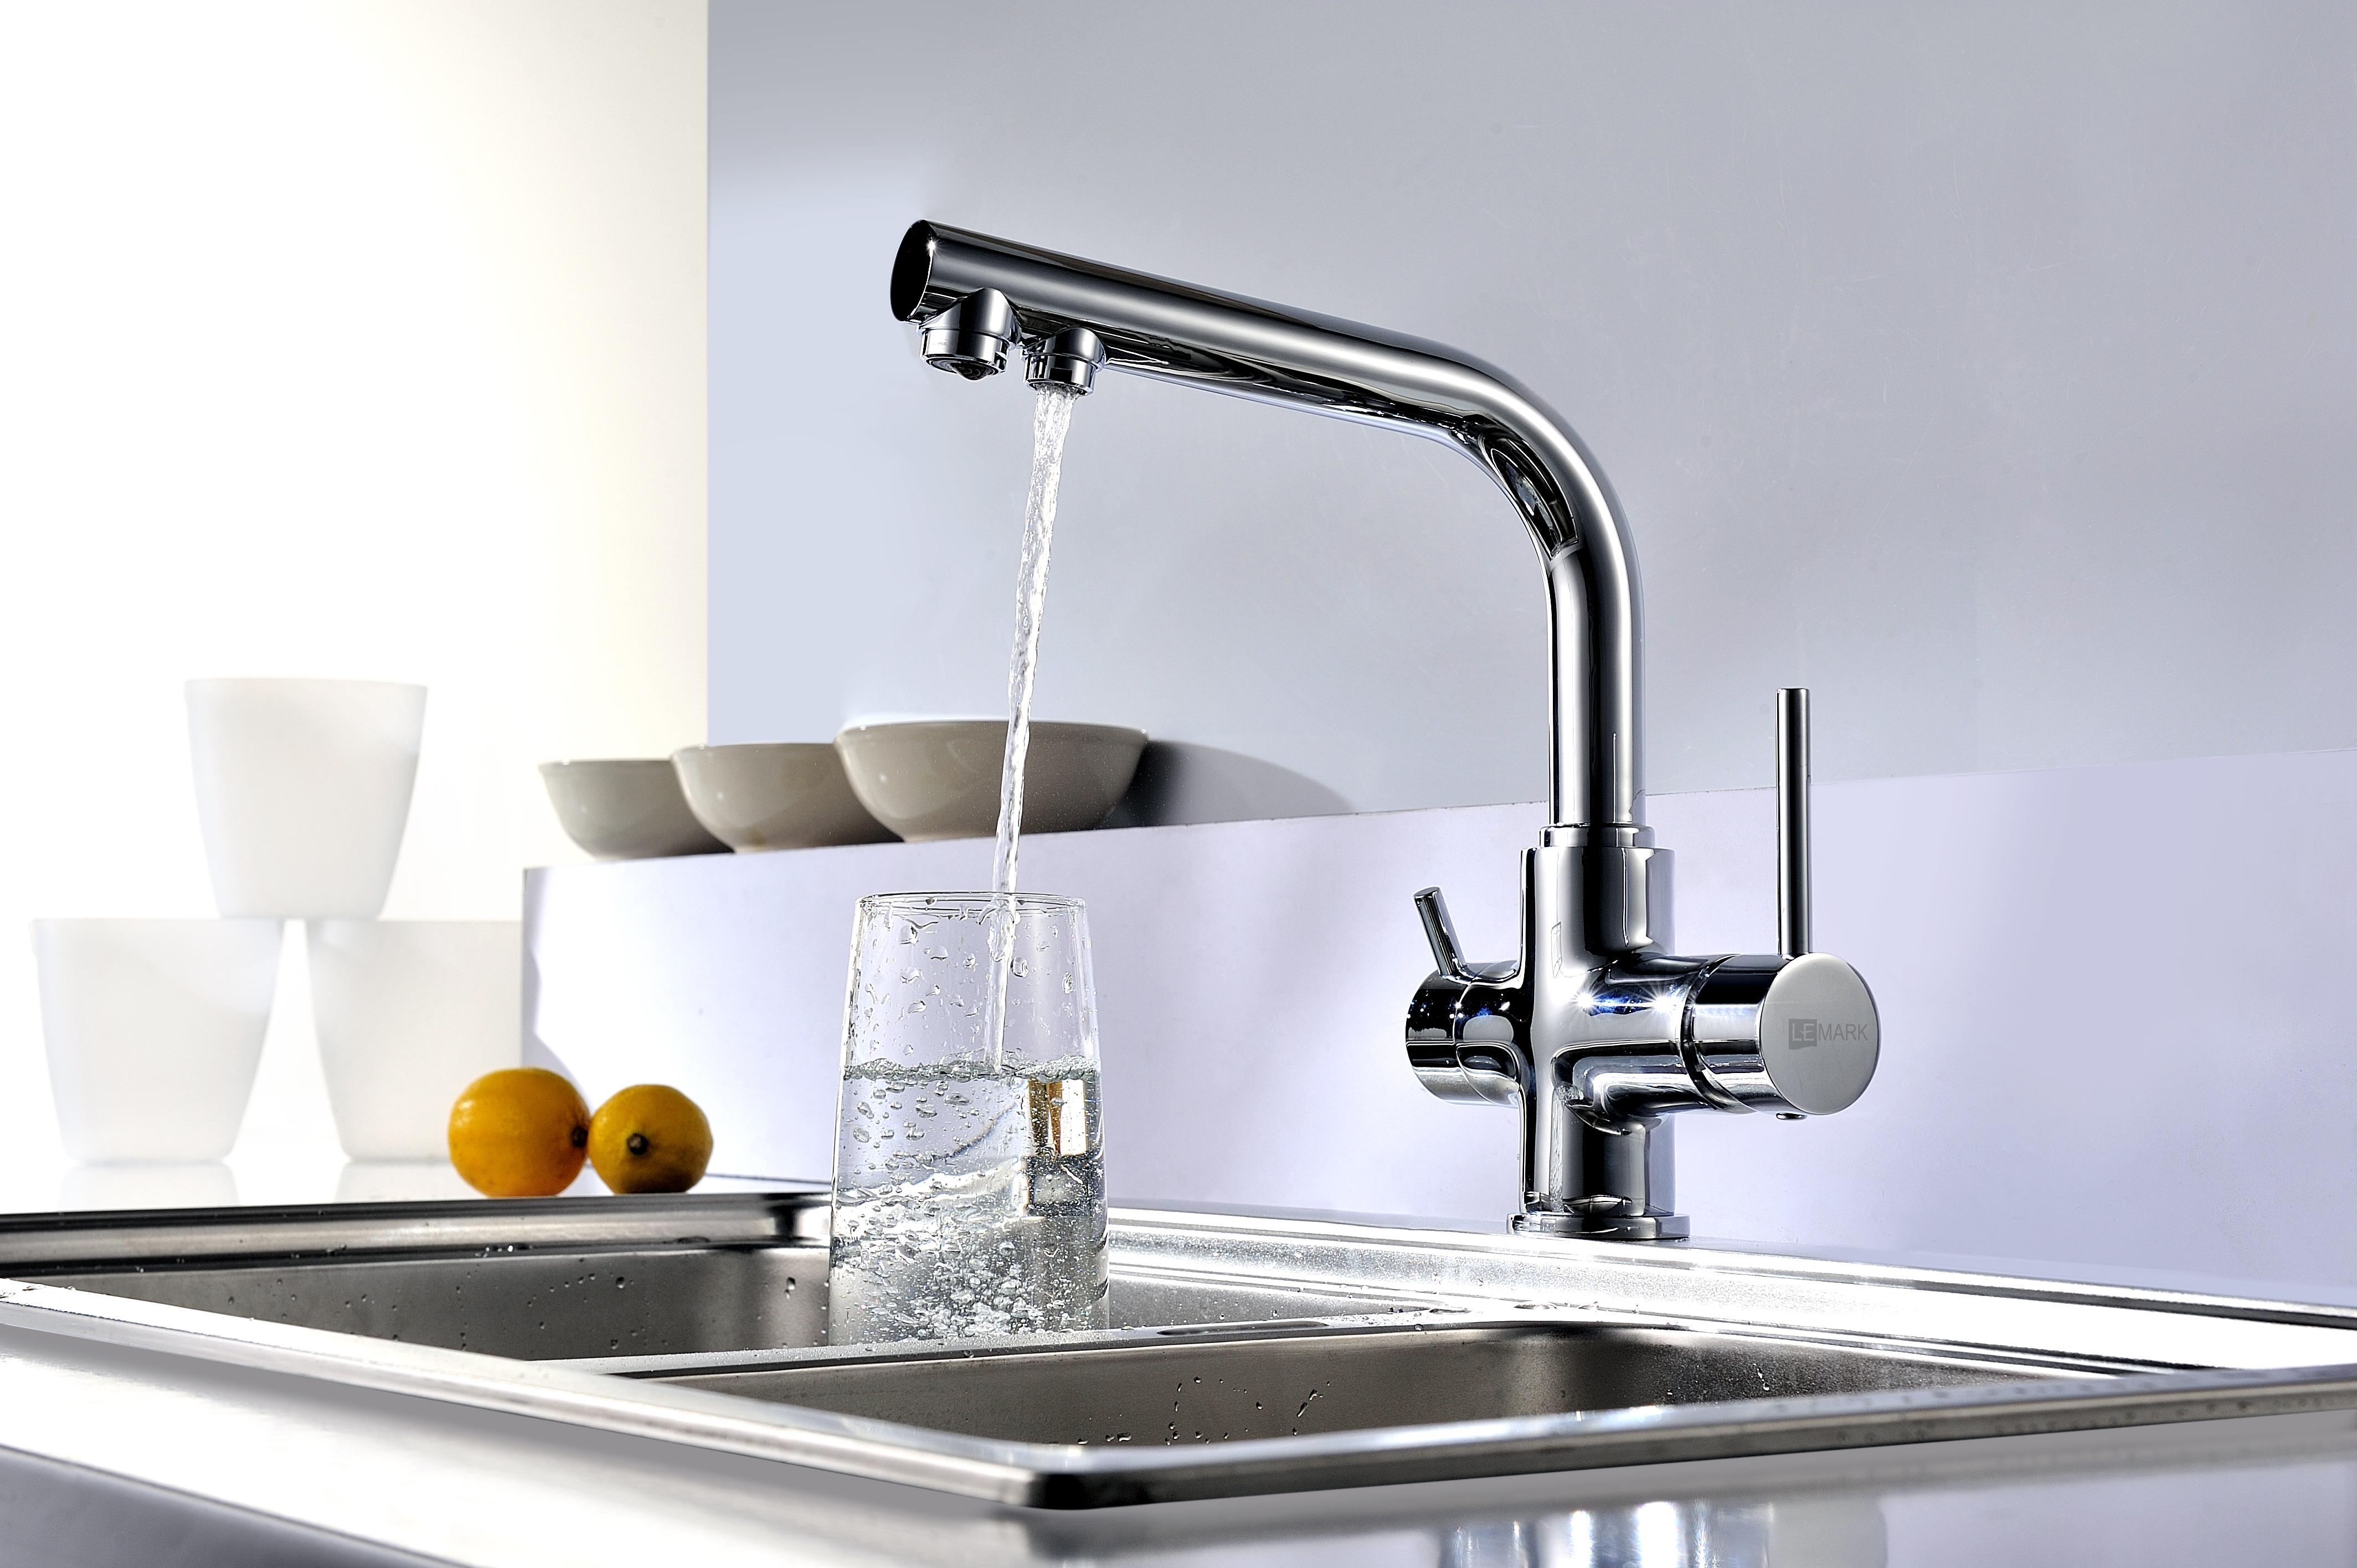 Выбираем смеситель для кухни с краном для питьевой воды: рейтинг лучших моделей по цене и качеству